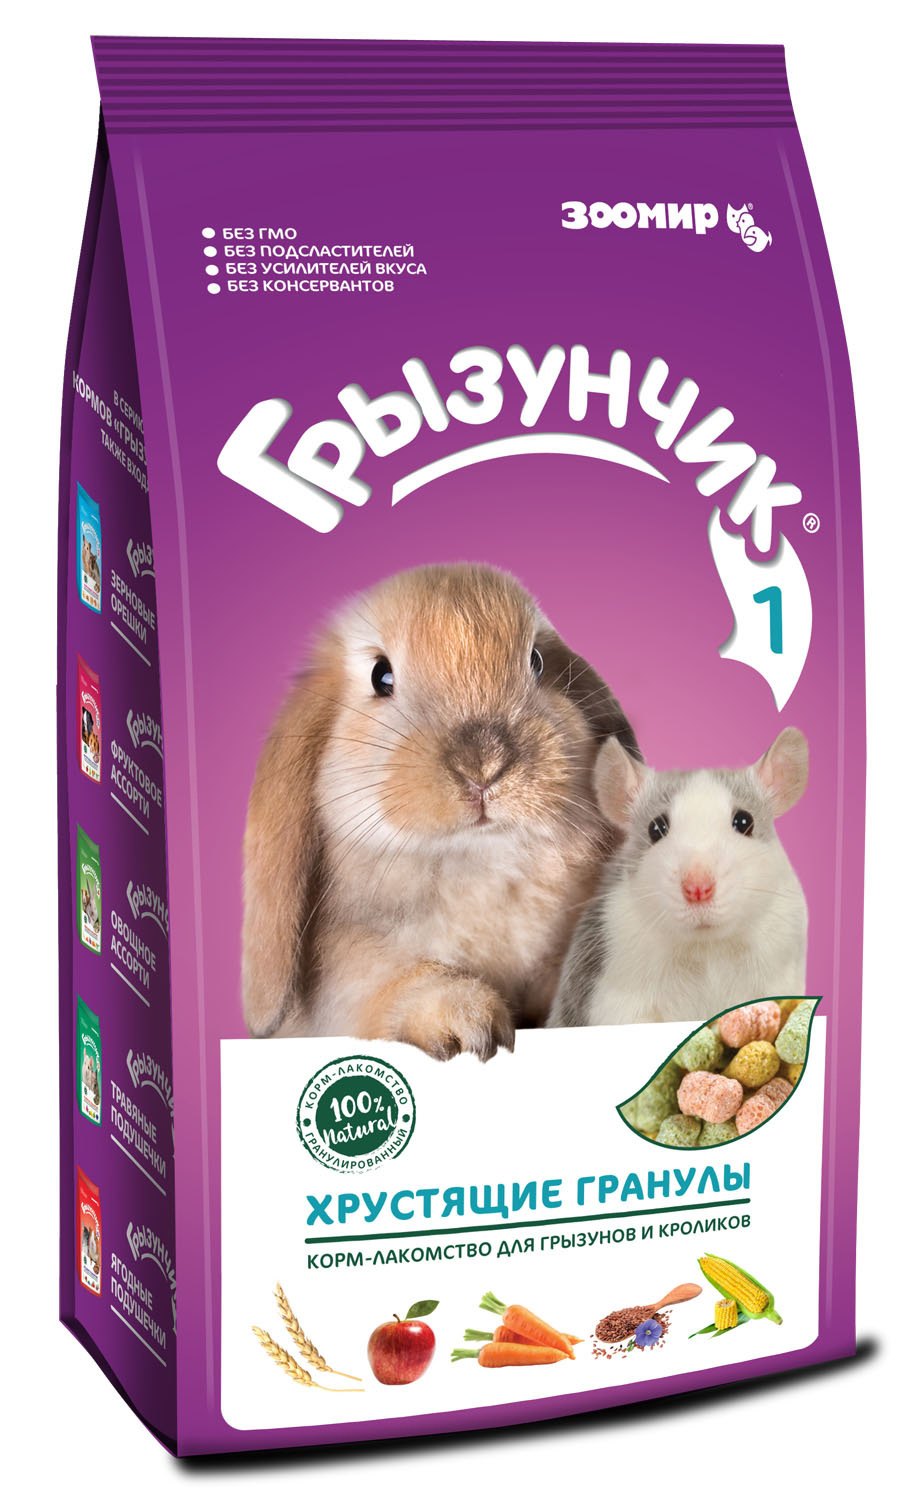 ЗООМИР ЗООМИР корм-лакомство для грызунов и кроликов Грызунчик 1 Хрустящие гранулы (1,5 кг)